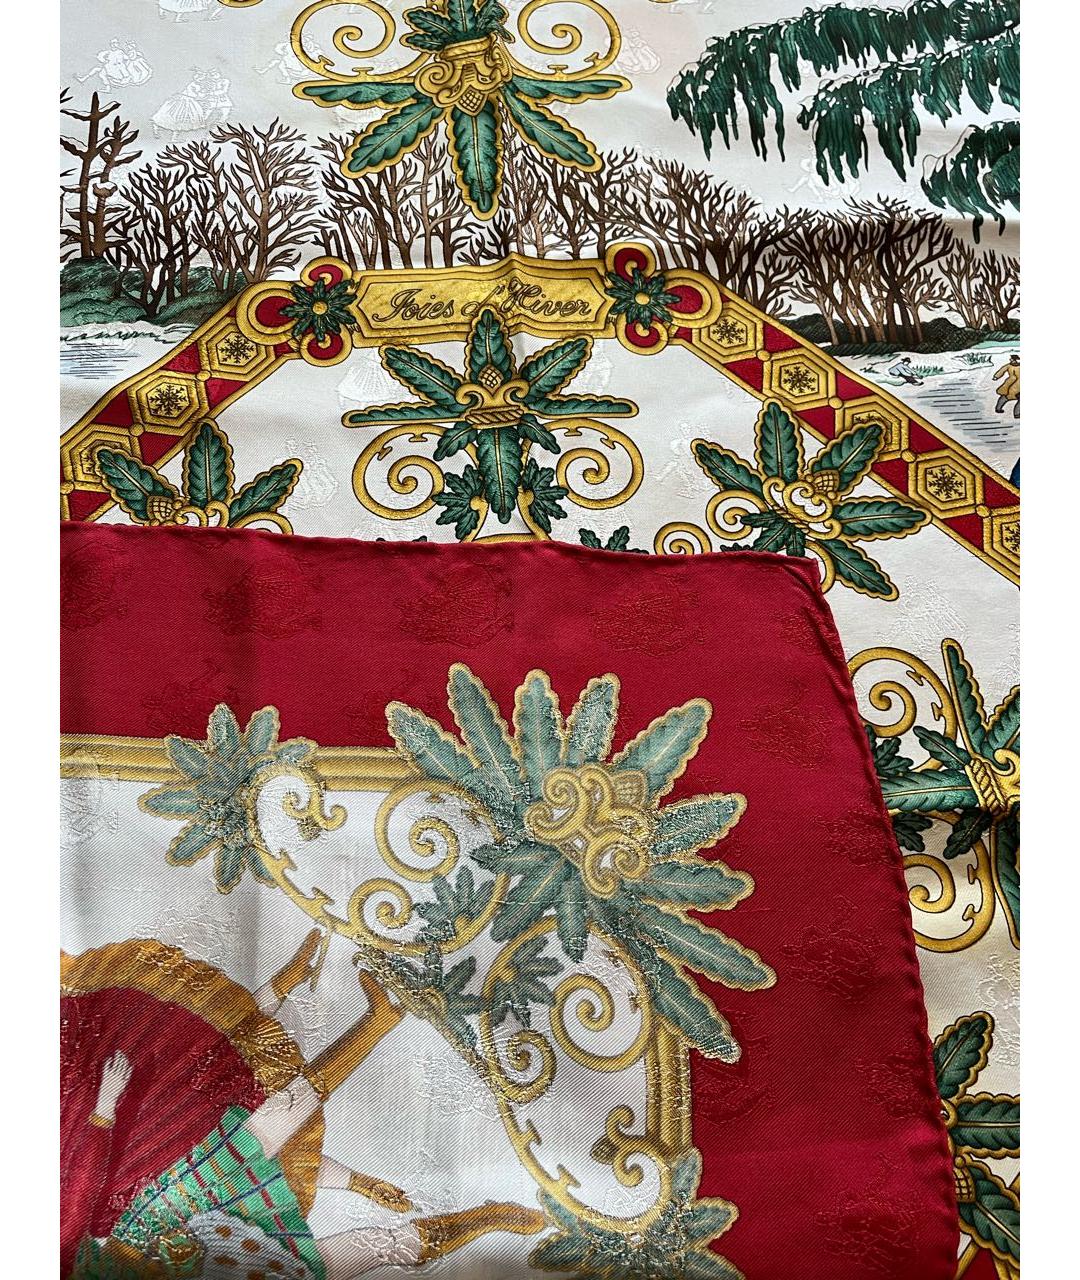 HERMES PRE-OWNED Красный шелковый платок, фото 2